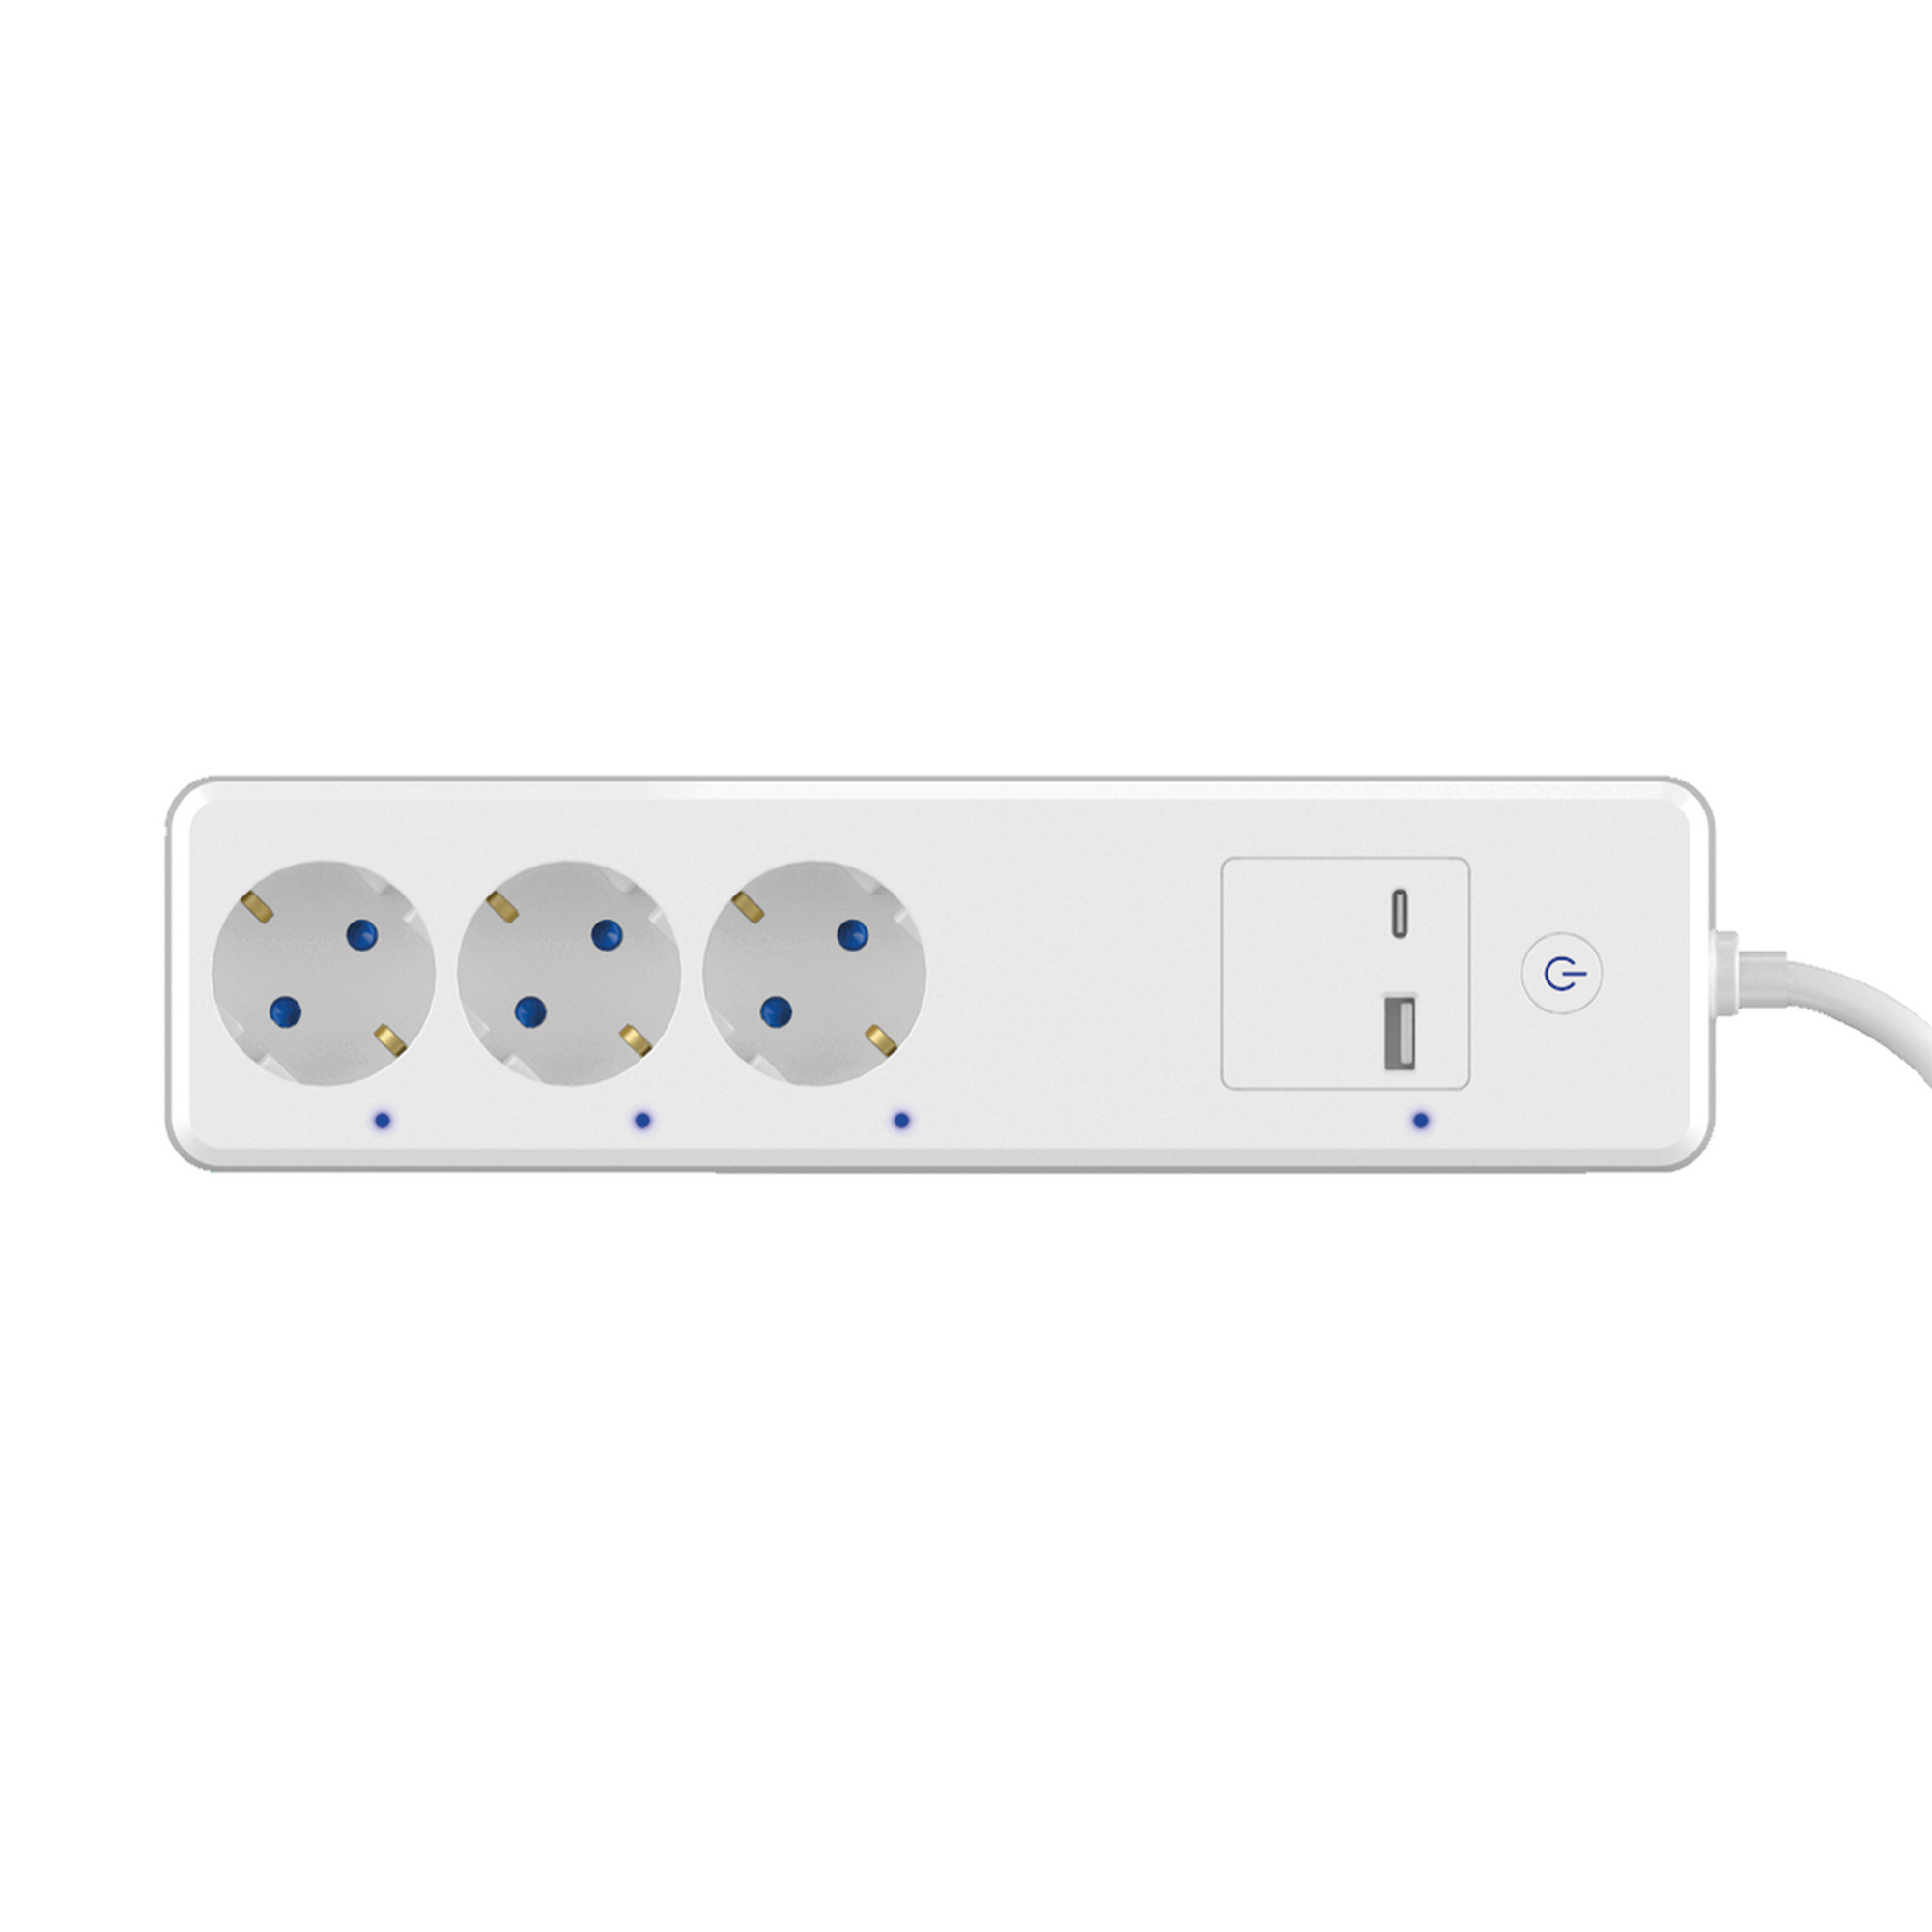 Wifi-Steckerleiste weiß 3-fach mit 2 USB-Ports + product picture